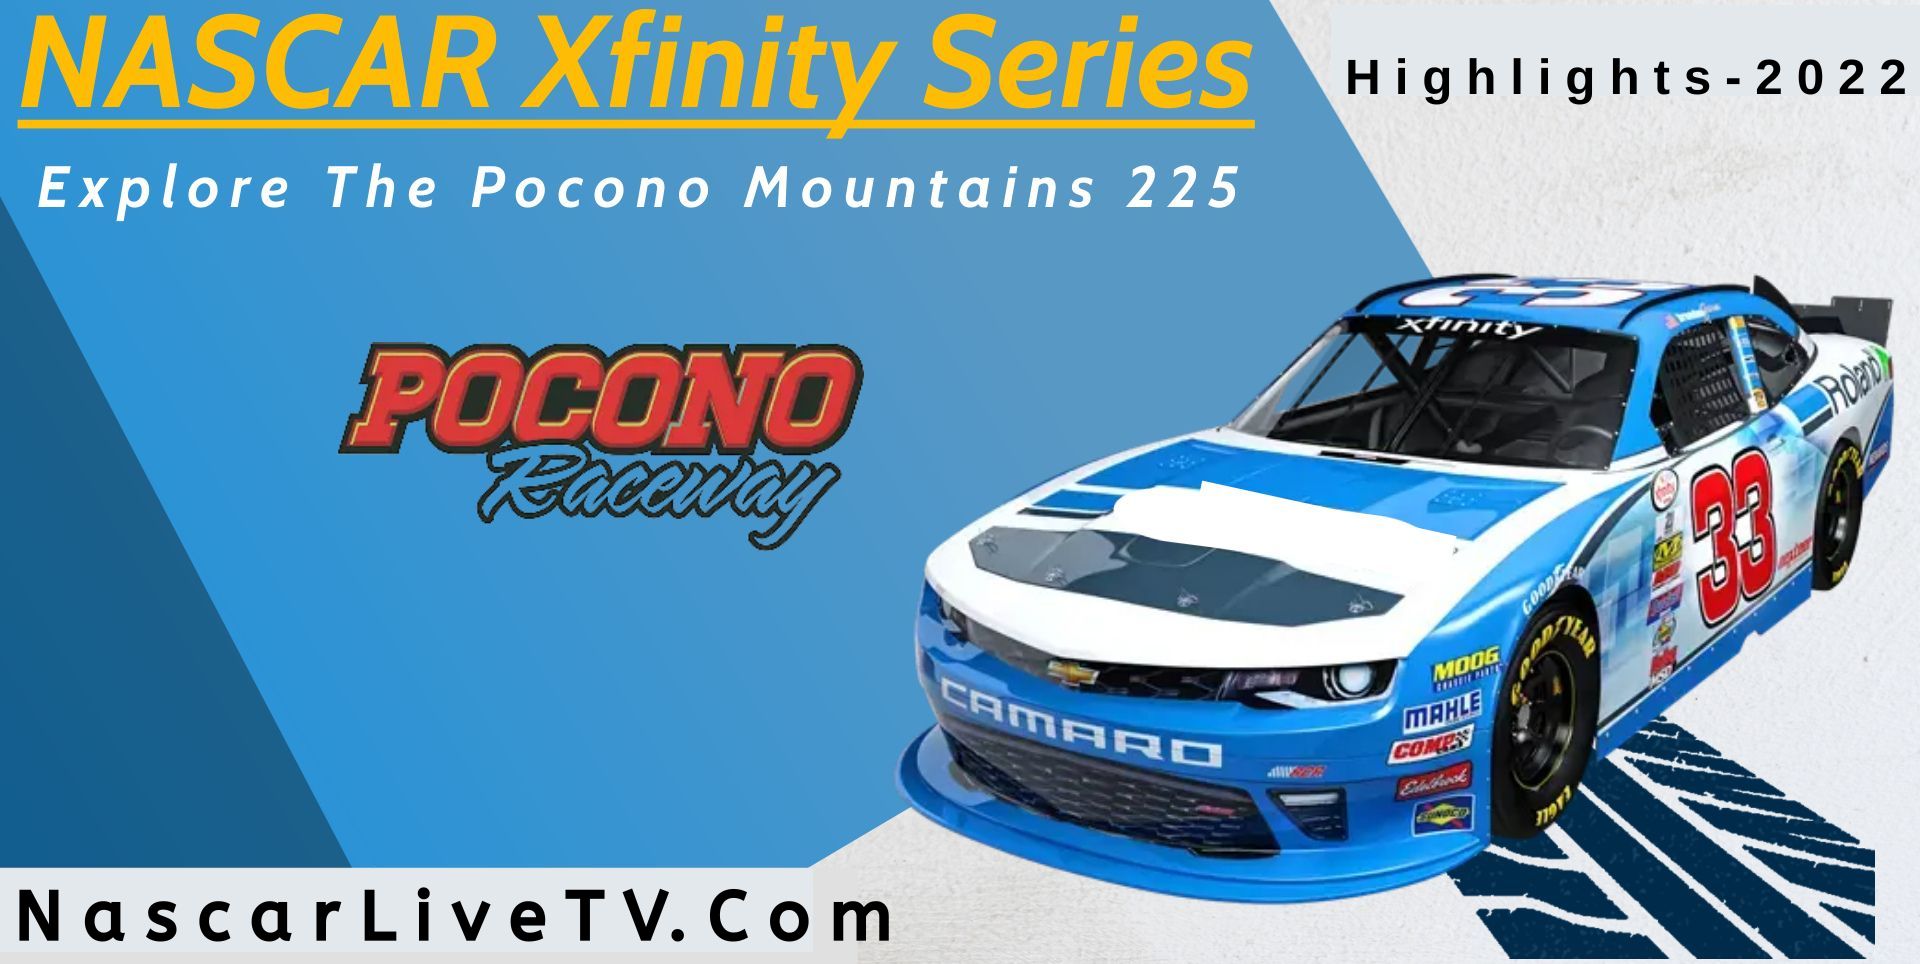 Explore The Pocono Mountains 225 Highlights NASCAR 2022